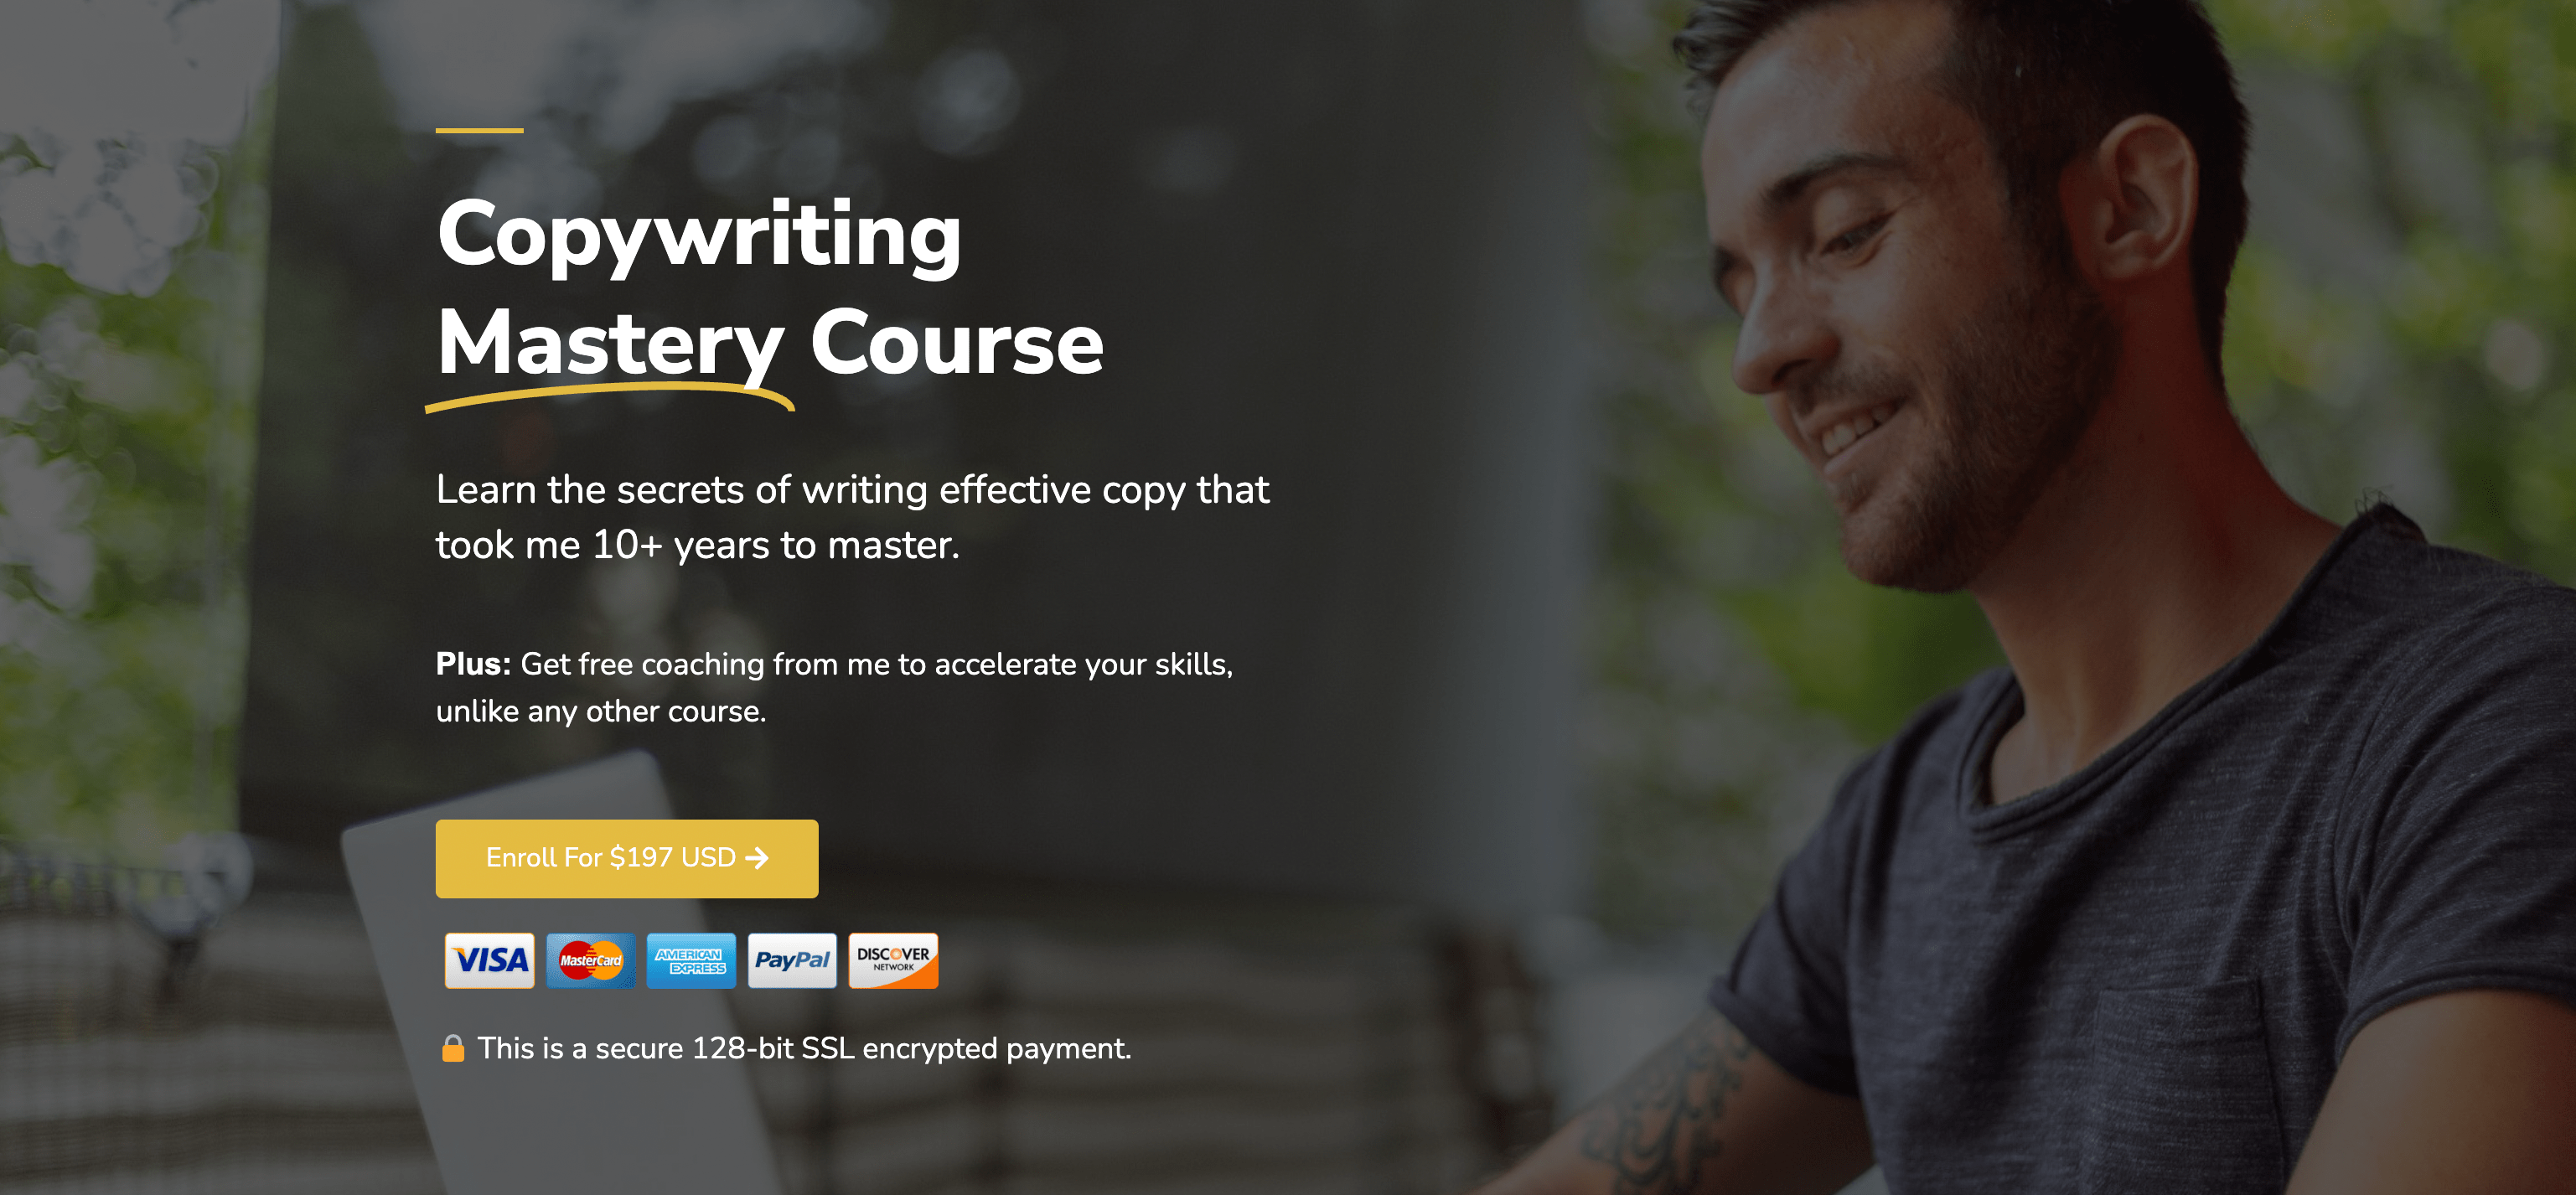 Copywriting mastery course